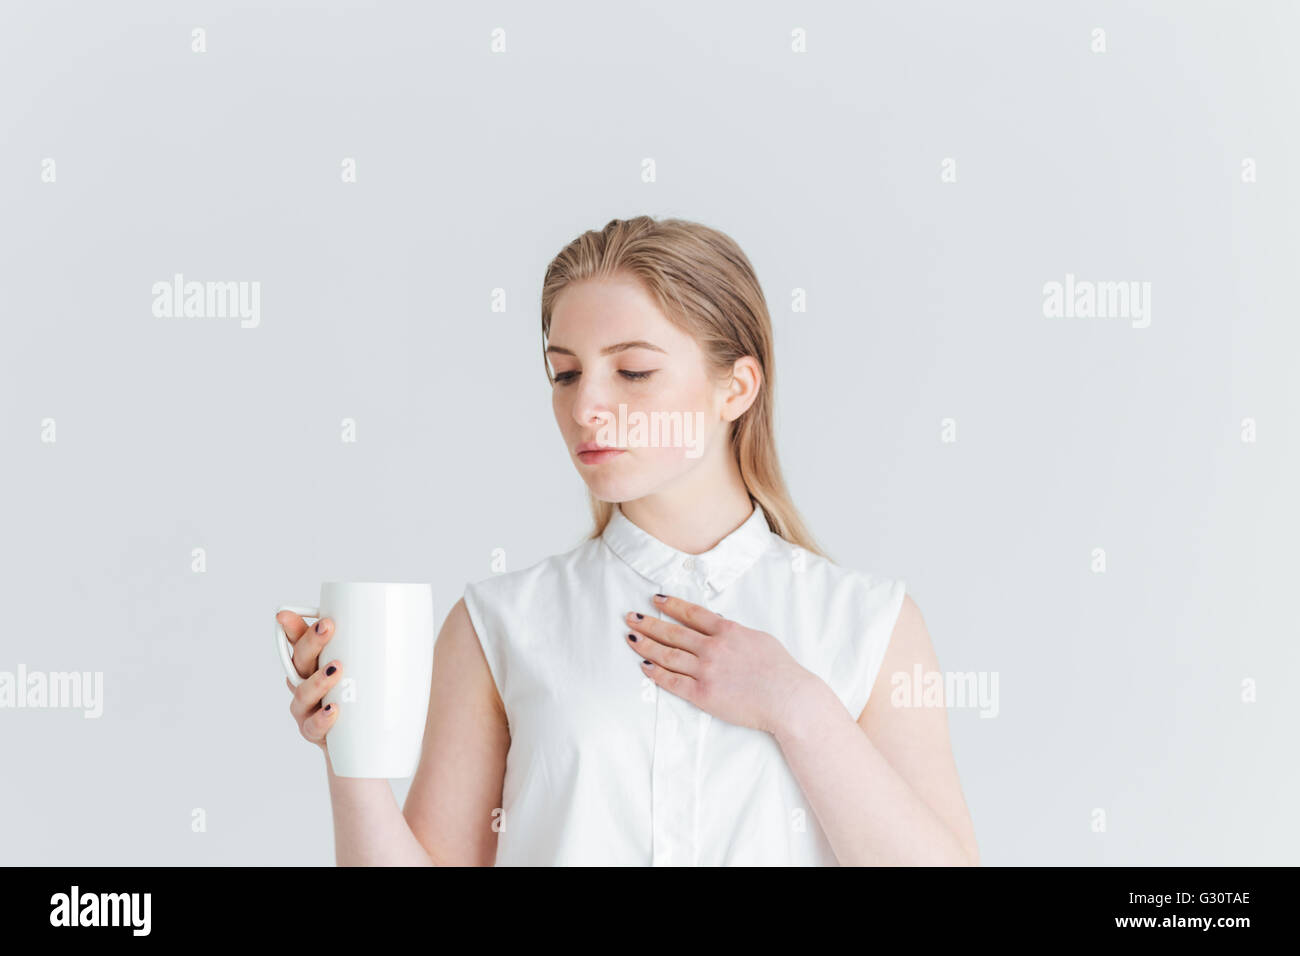 Portrait of a young woman holding cup avec plateau isolé sur fond blanc Banque D'Images